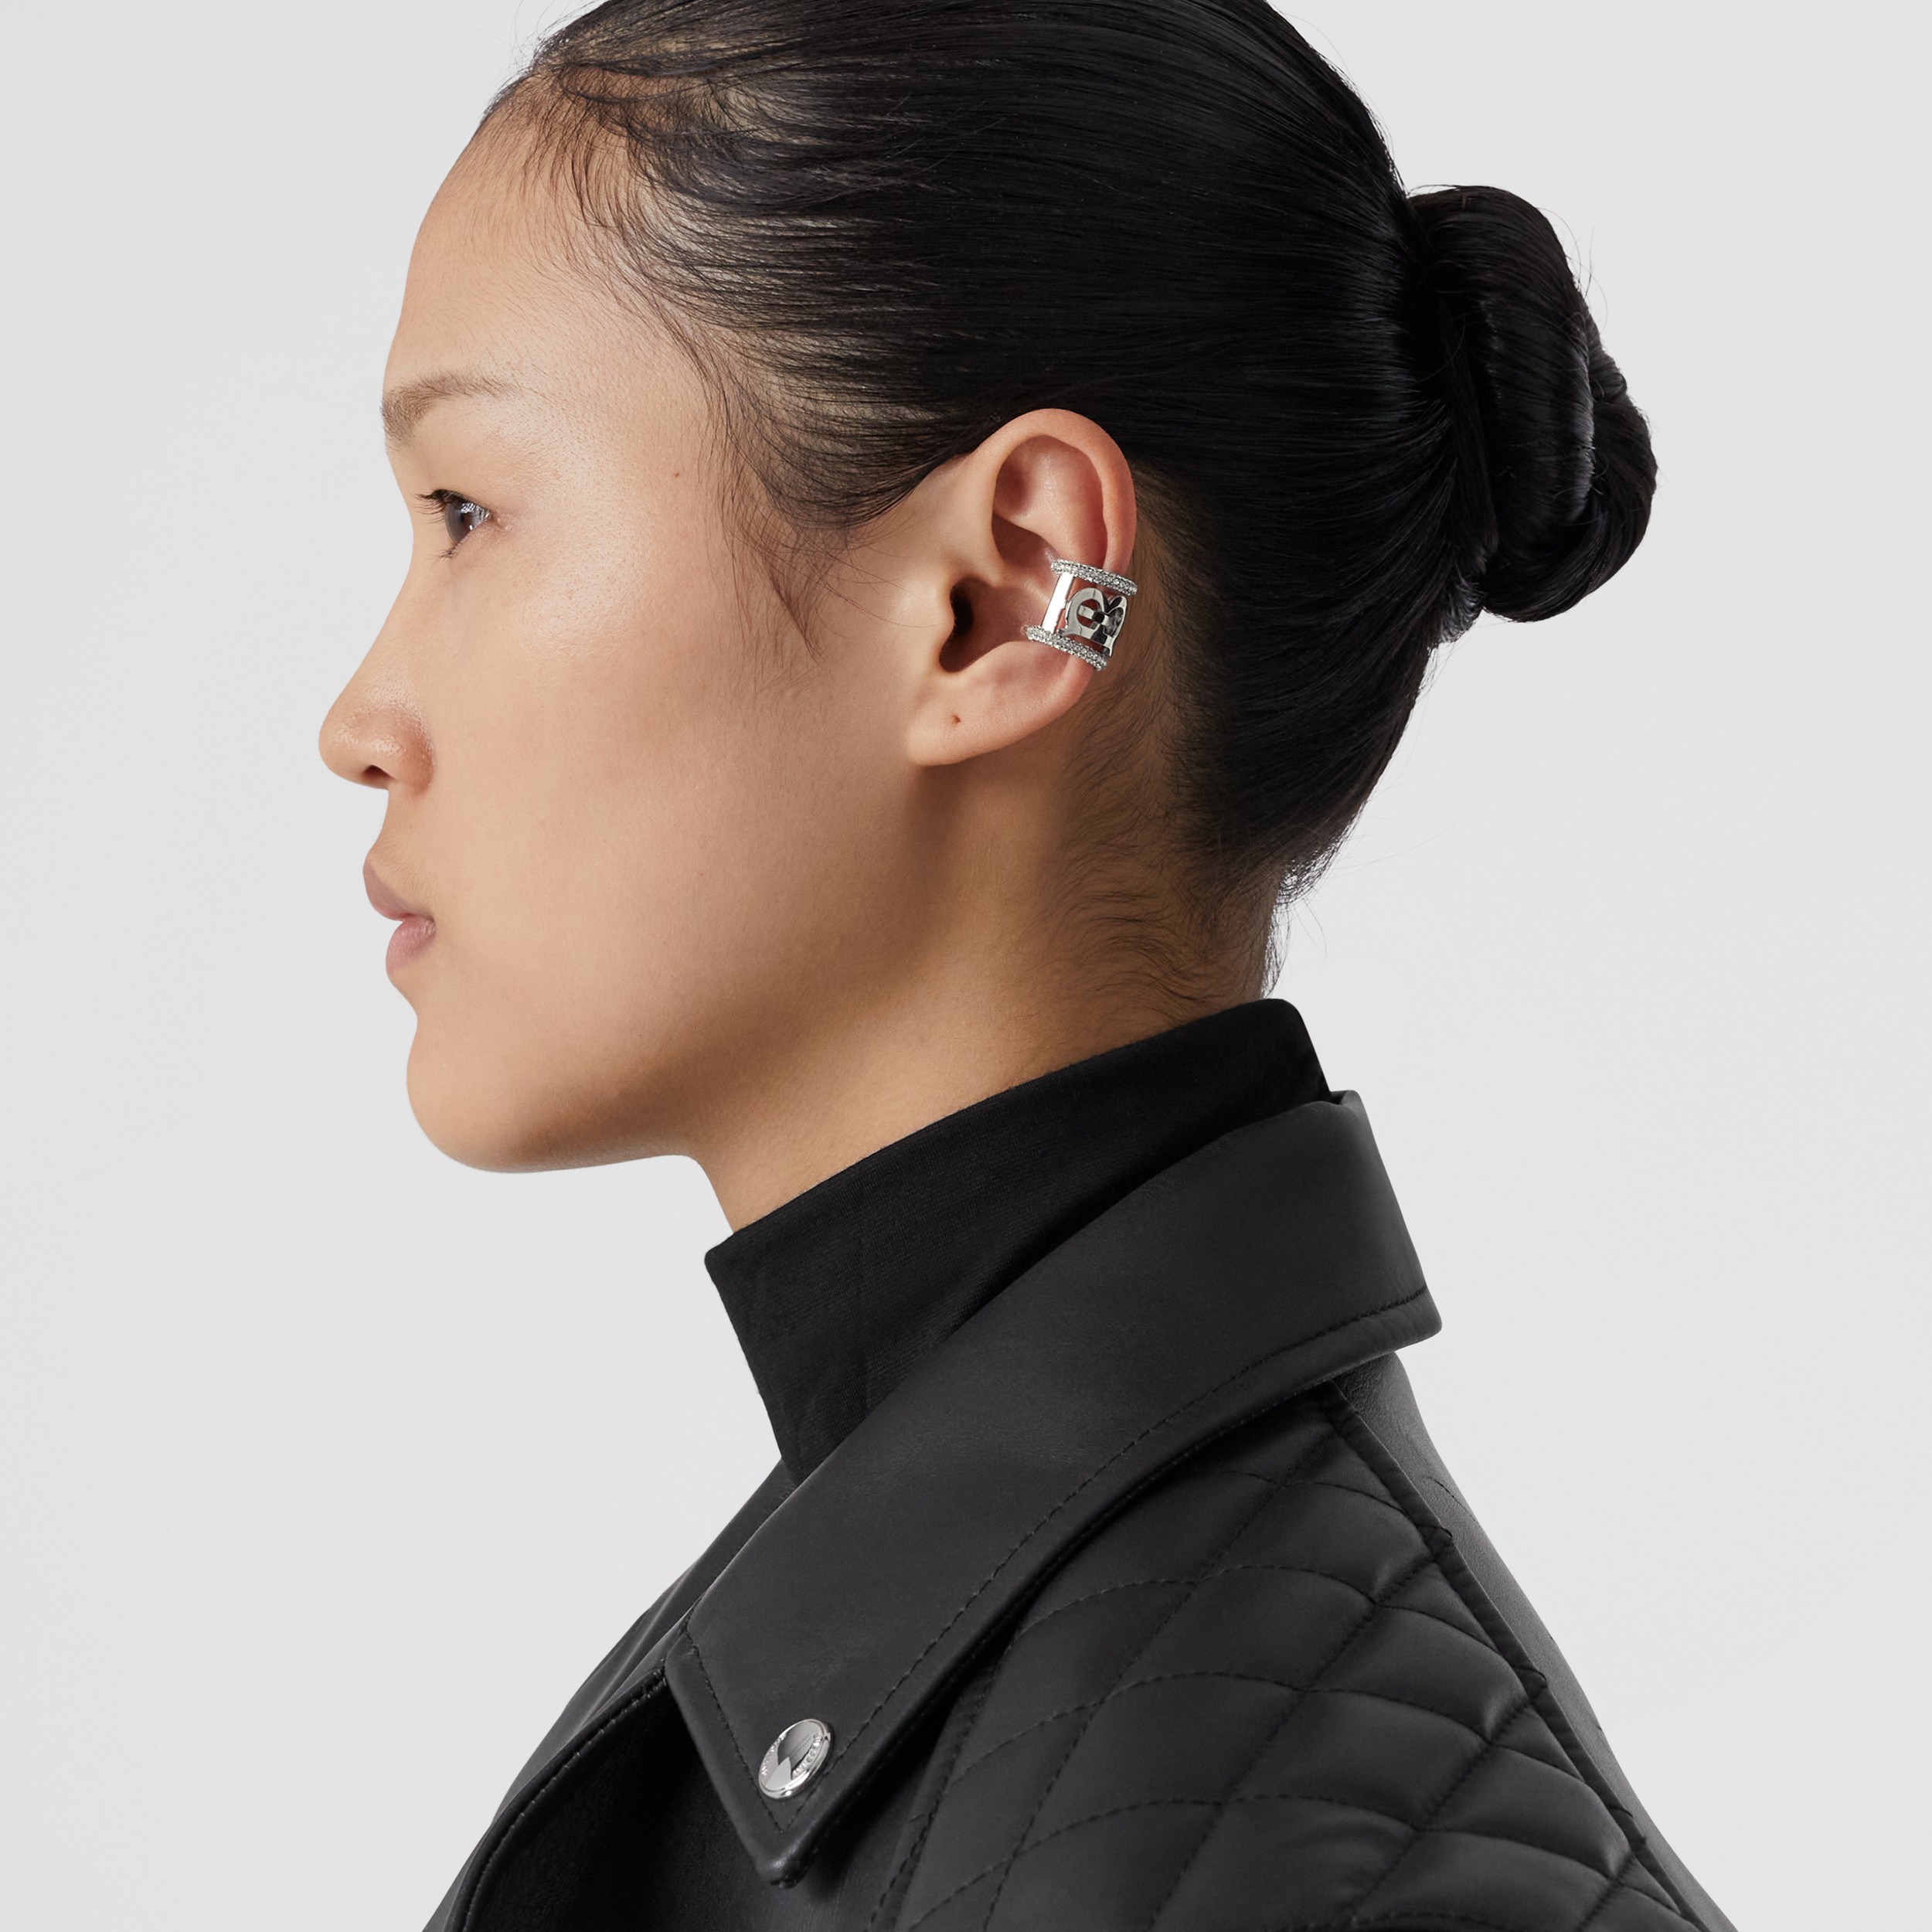 Pendiente ear cuff con cristales y monograma (Paladio/cristal) - Mujer | Burberry® oficial - 3